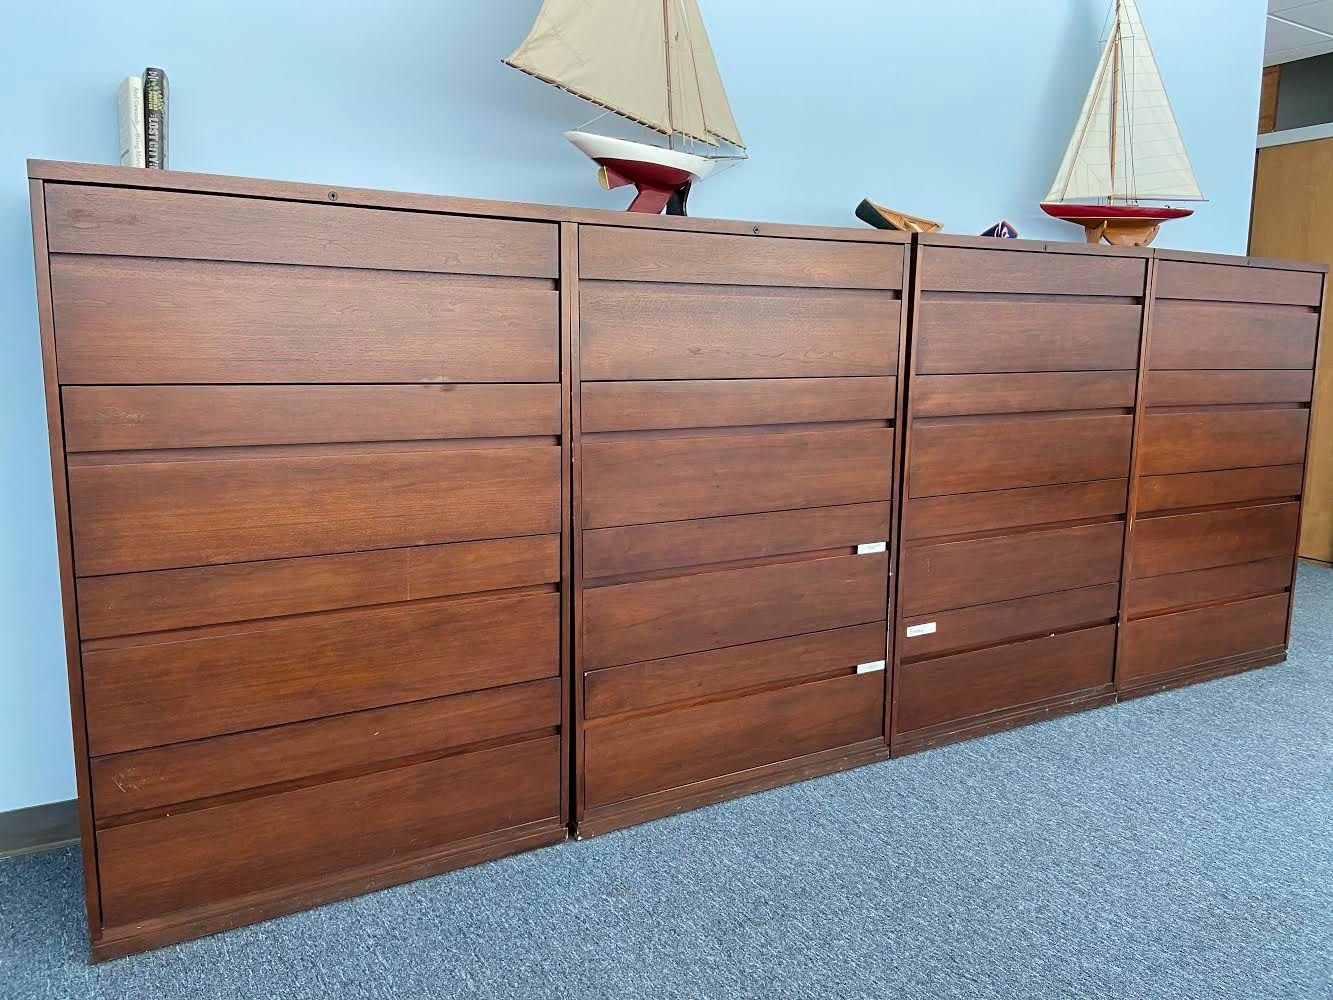 4 wood filing cabinets